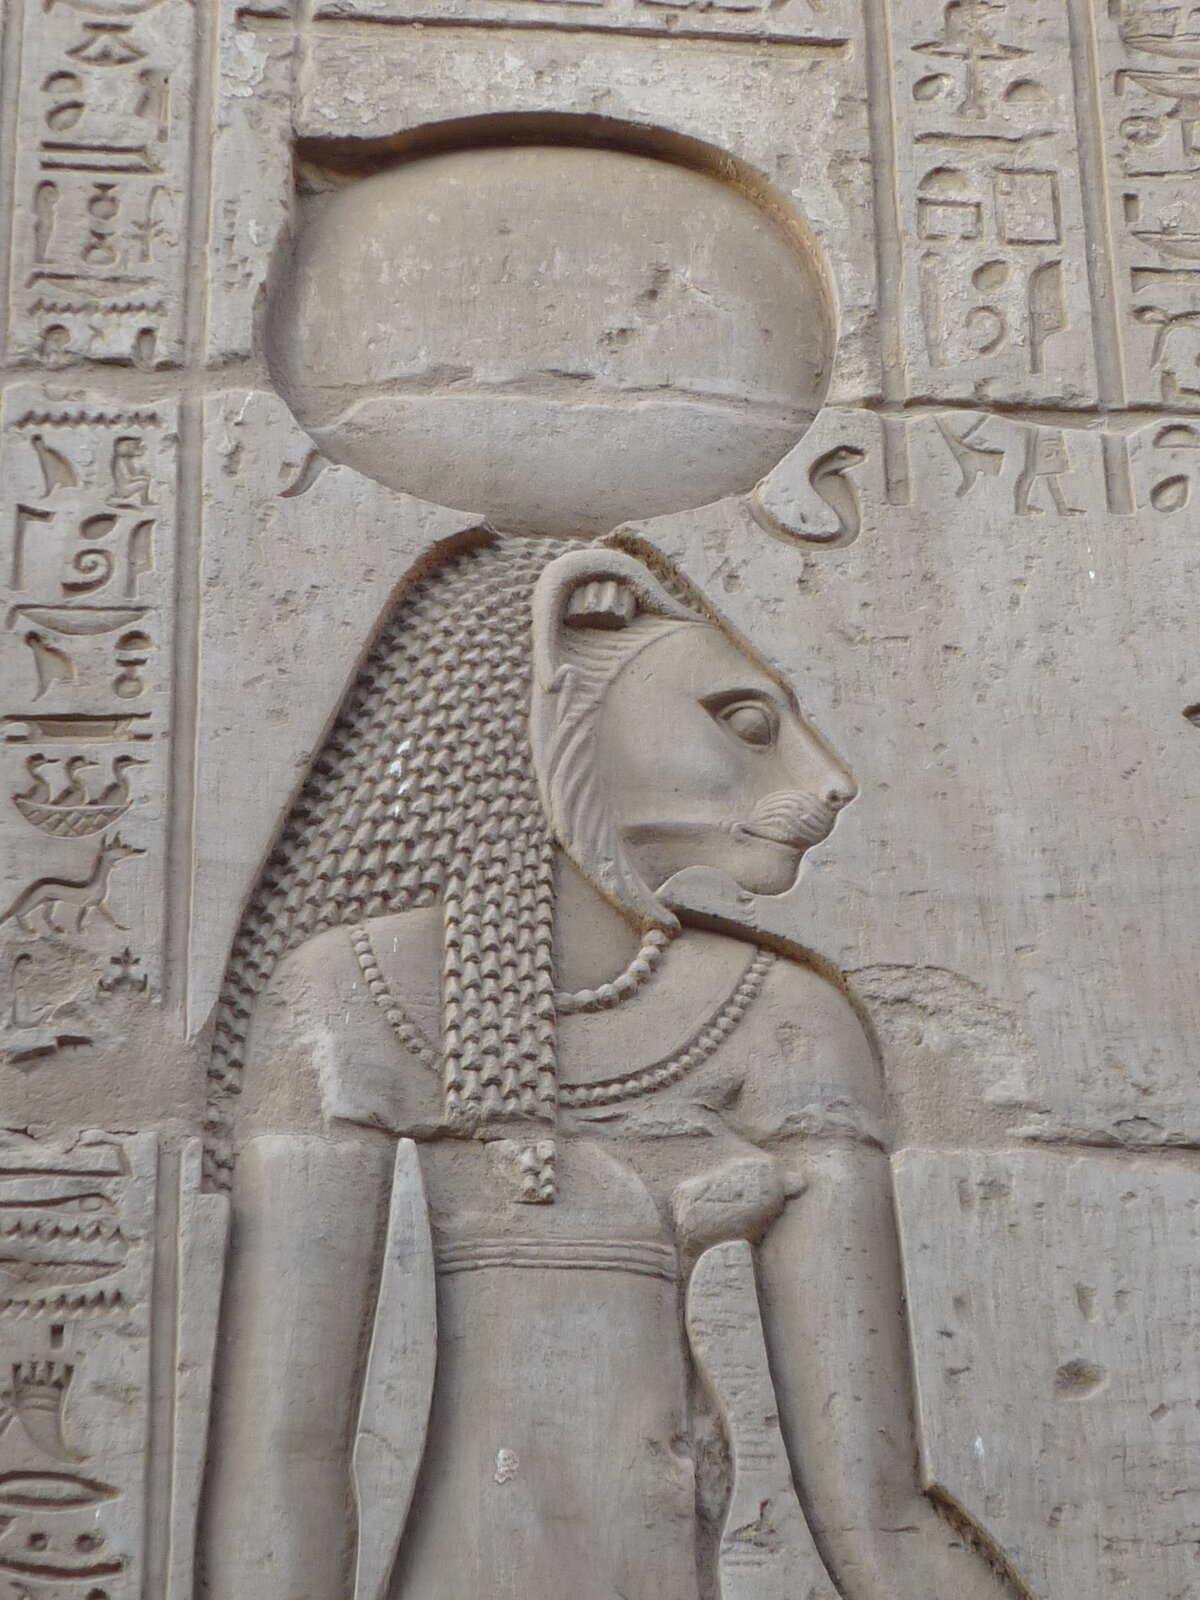 Ilustracja przedstawia fragment reliefu ze ściany świątyni w Kom Obo w Egipcie. Na fotografii widać Horusa z głową lwa. Jest ubrany w dopasowaną tunikę, na szyi ma korale. Na ścianie znajduje się tekst sporządzony pismem egipskim.